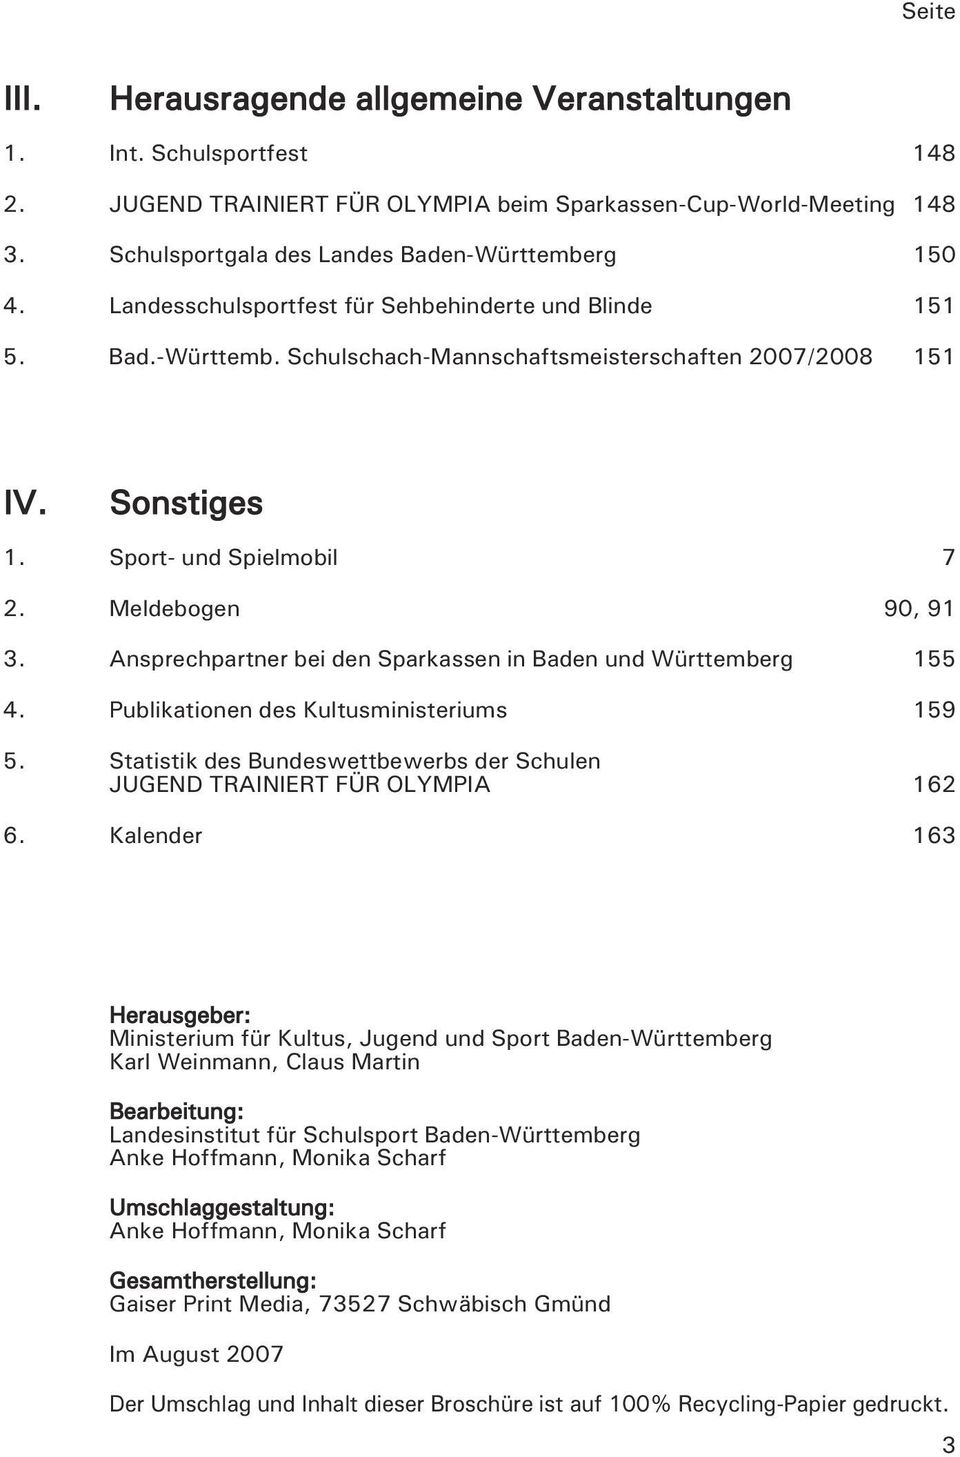 Sport- und Spielmobil 7 2. Meldebogen 90, 91 3. Ansprechpartner bei den Sparkassen in Baden und Württemberg 155 4. Publikationen des Kultusministeriums 159 5.